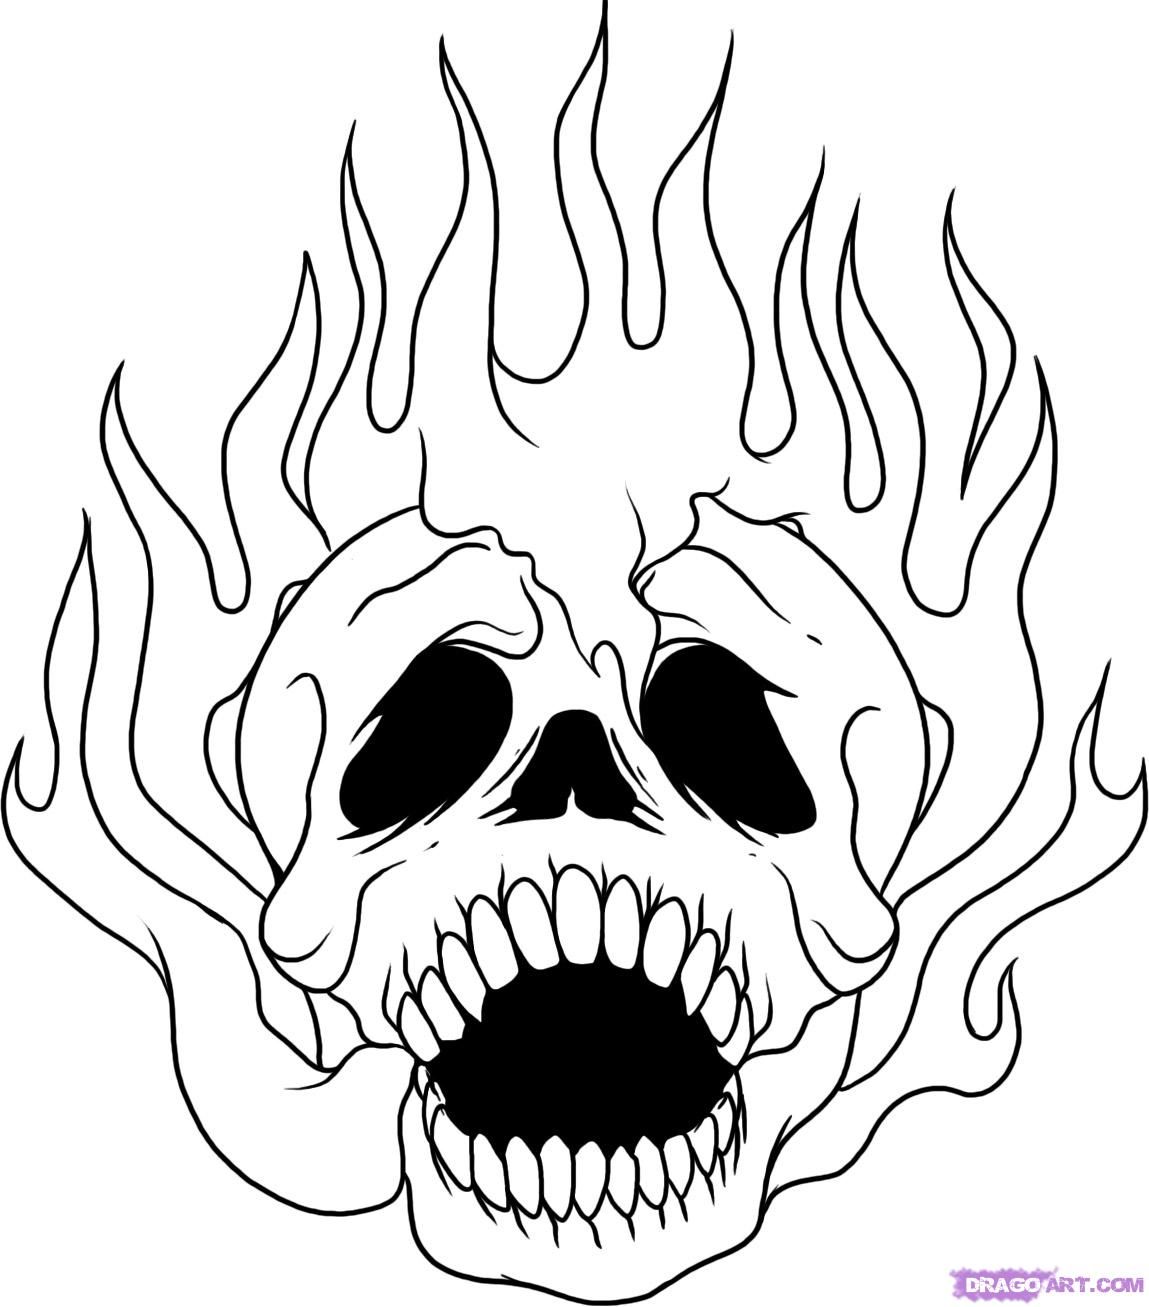 15 Pics of Flaming Skulls Coloring Pages Graffiti - Flaming Skull ...